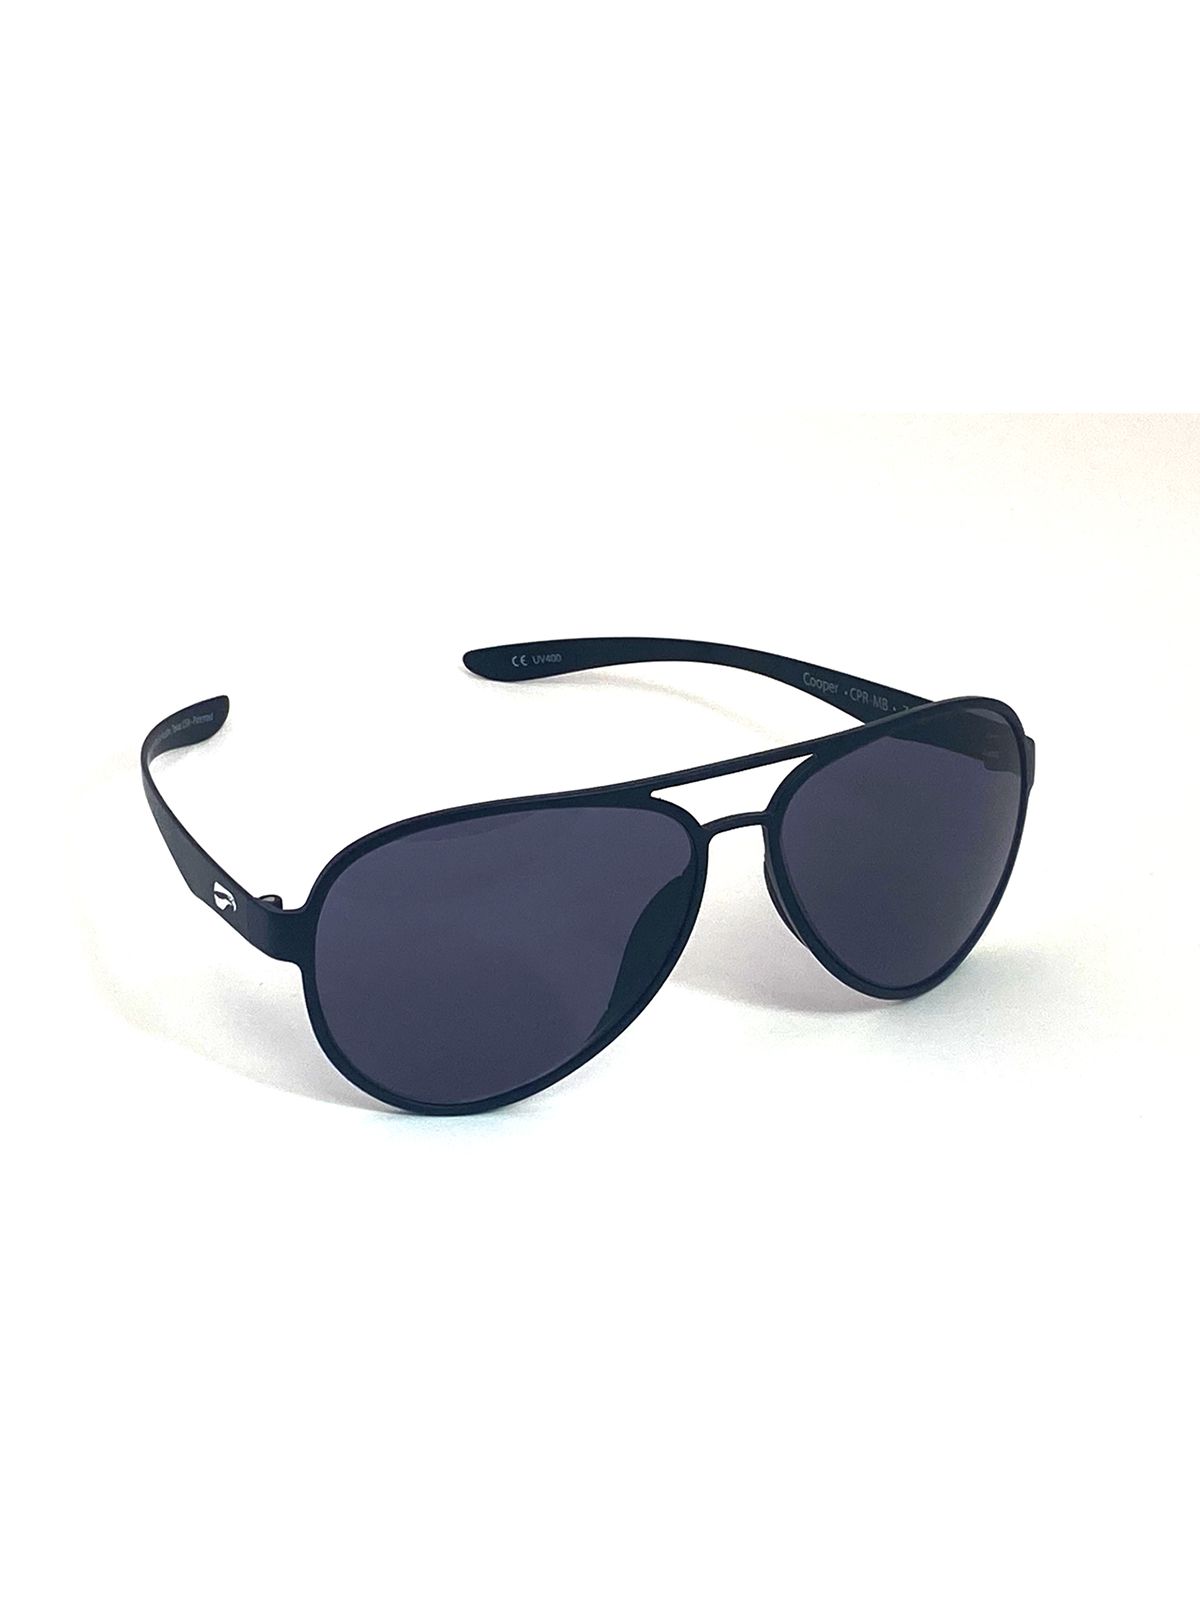 Flying Eyes Sonnenbrille Cooper Aviator - Rahmen matt schwarz, Linsen grau